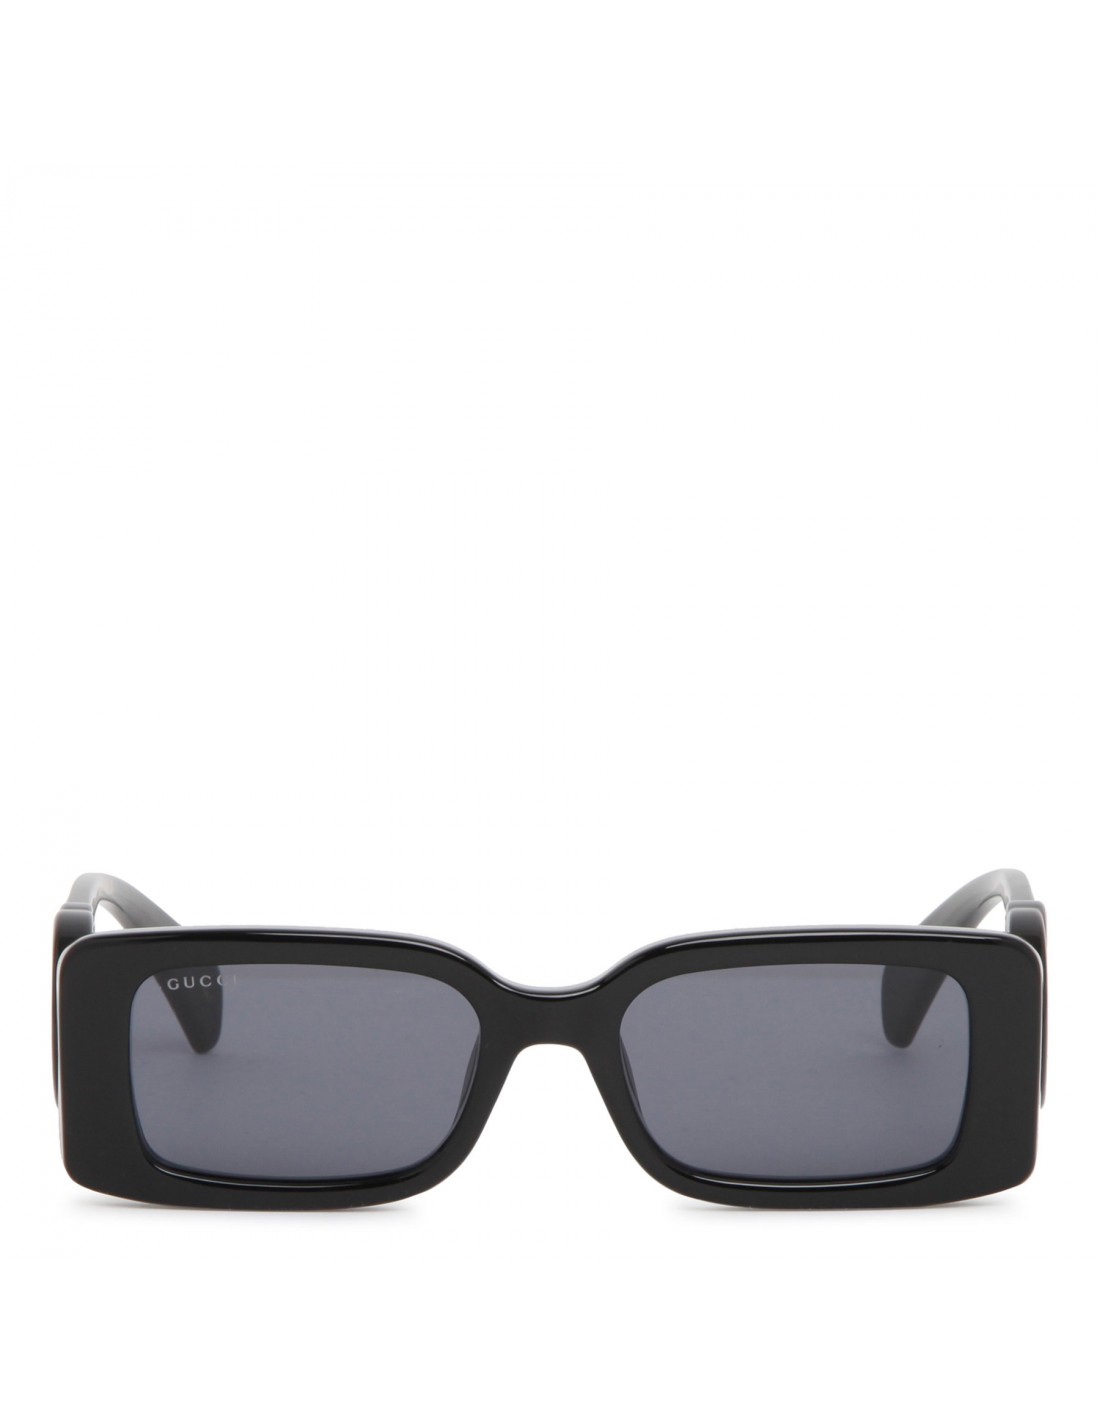 Black rectangular-frame sunglasses